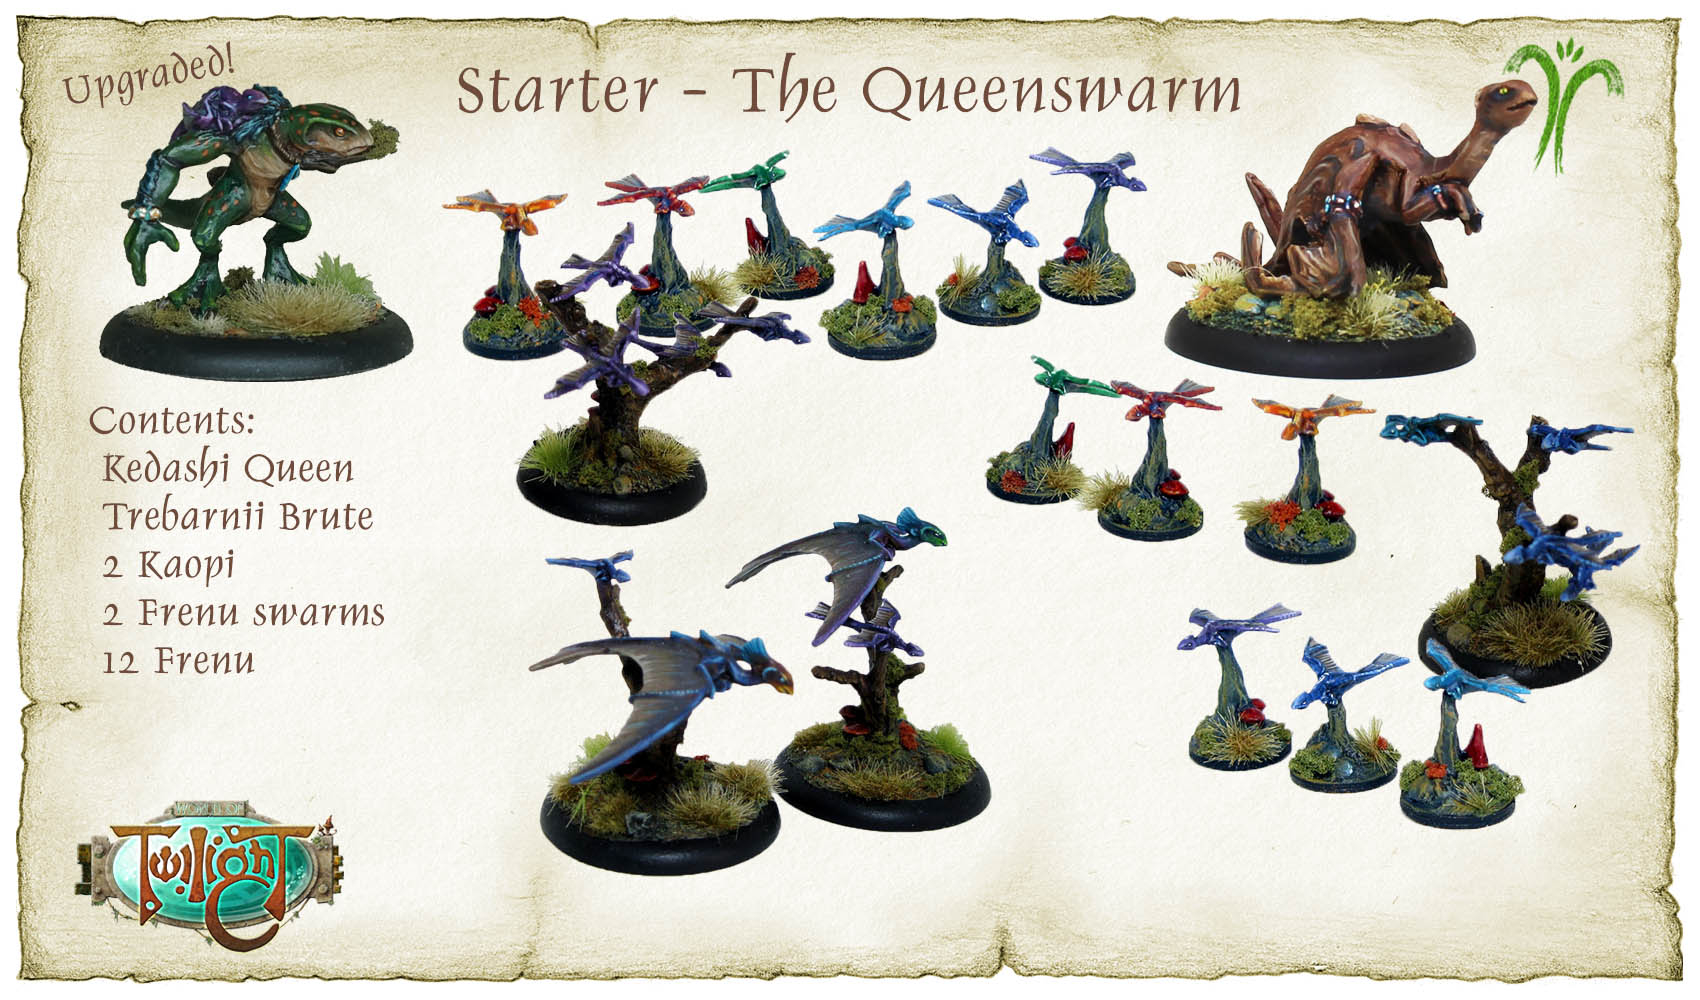 Starter: The Queenswarm